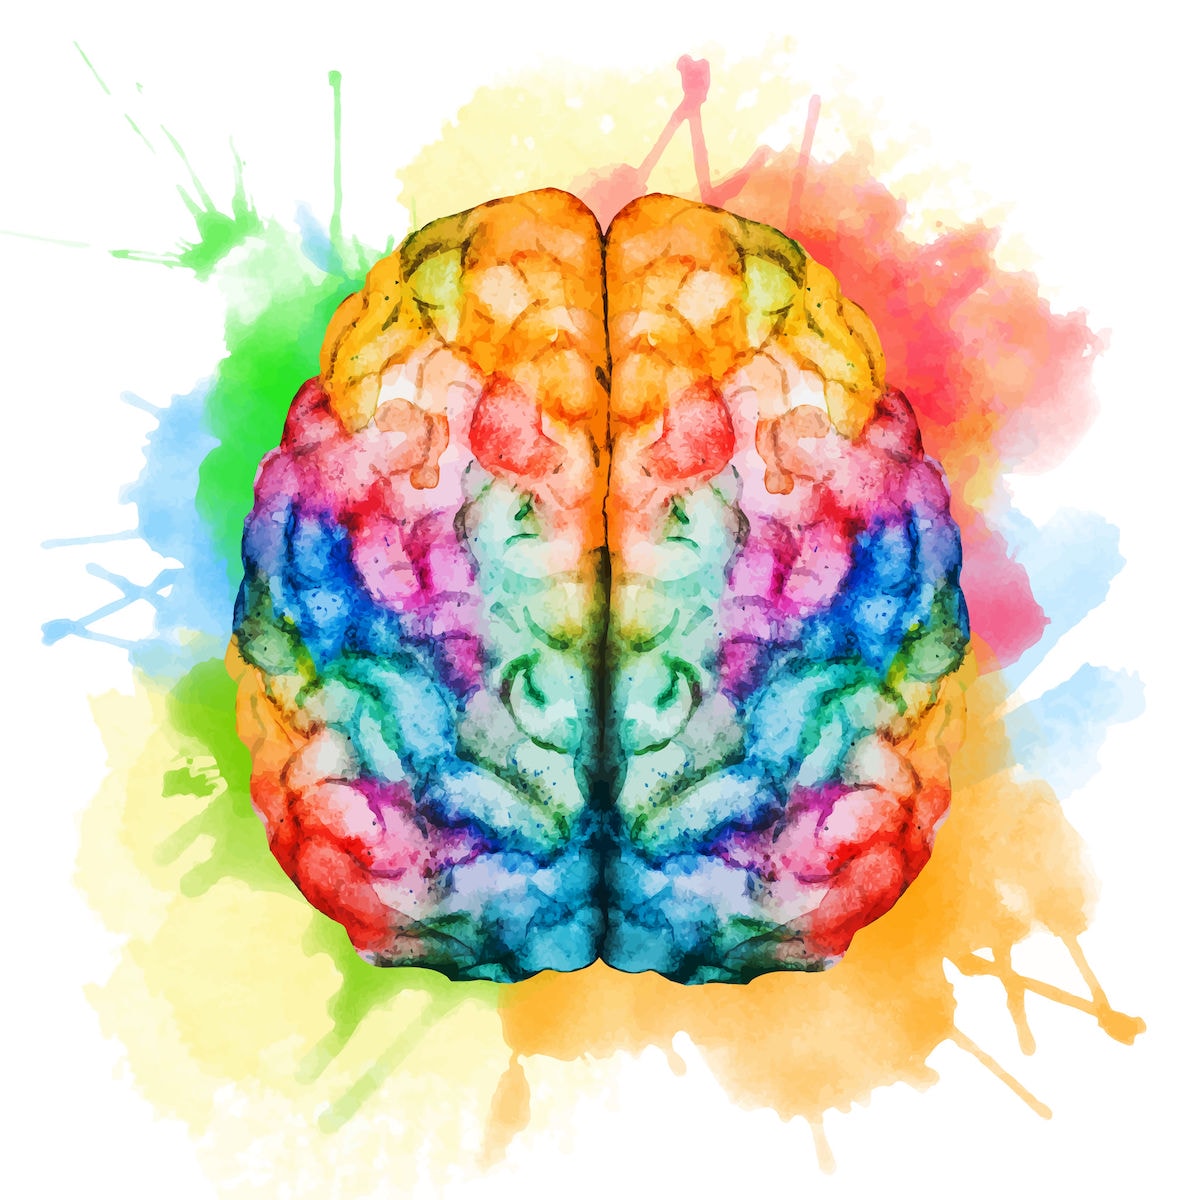 watercolor brain image